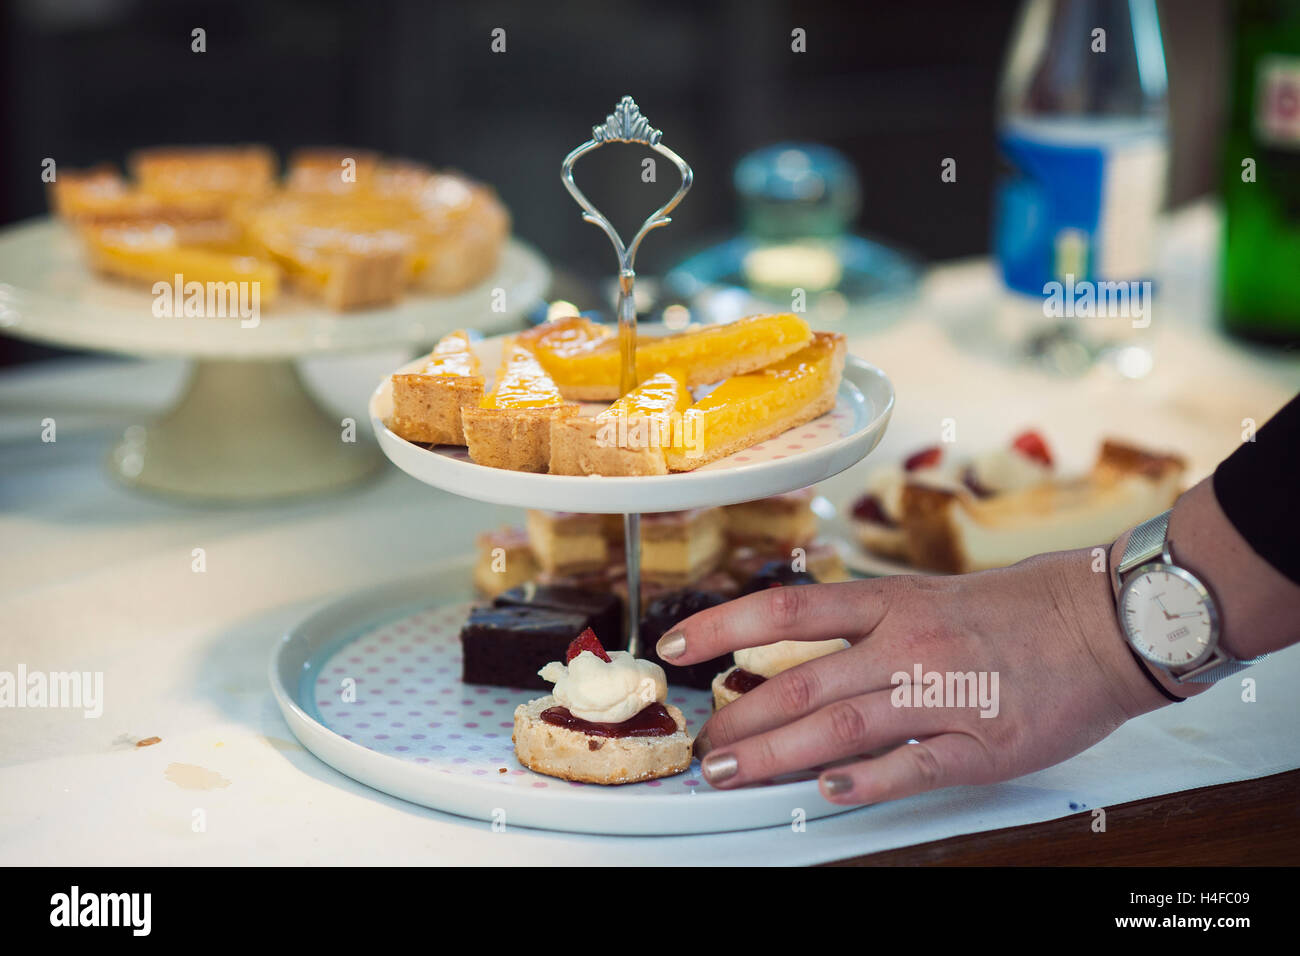 Busca deliciosas tortas en un stand de dos niveles con la mano de una persona para tomar uno Foto de stock